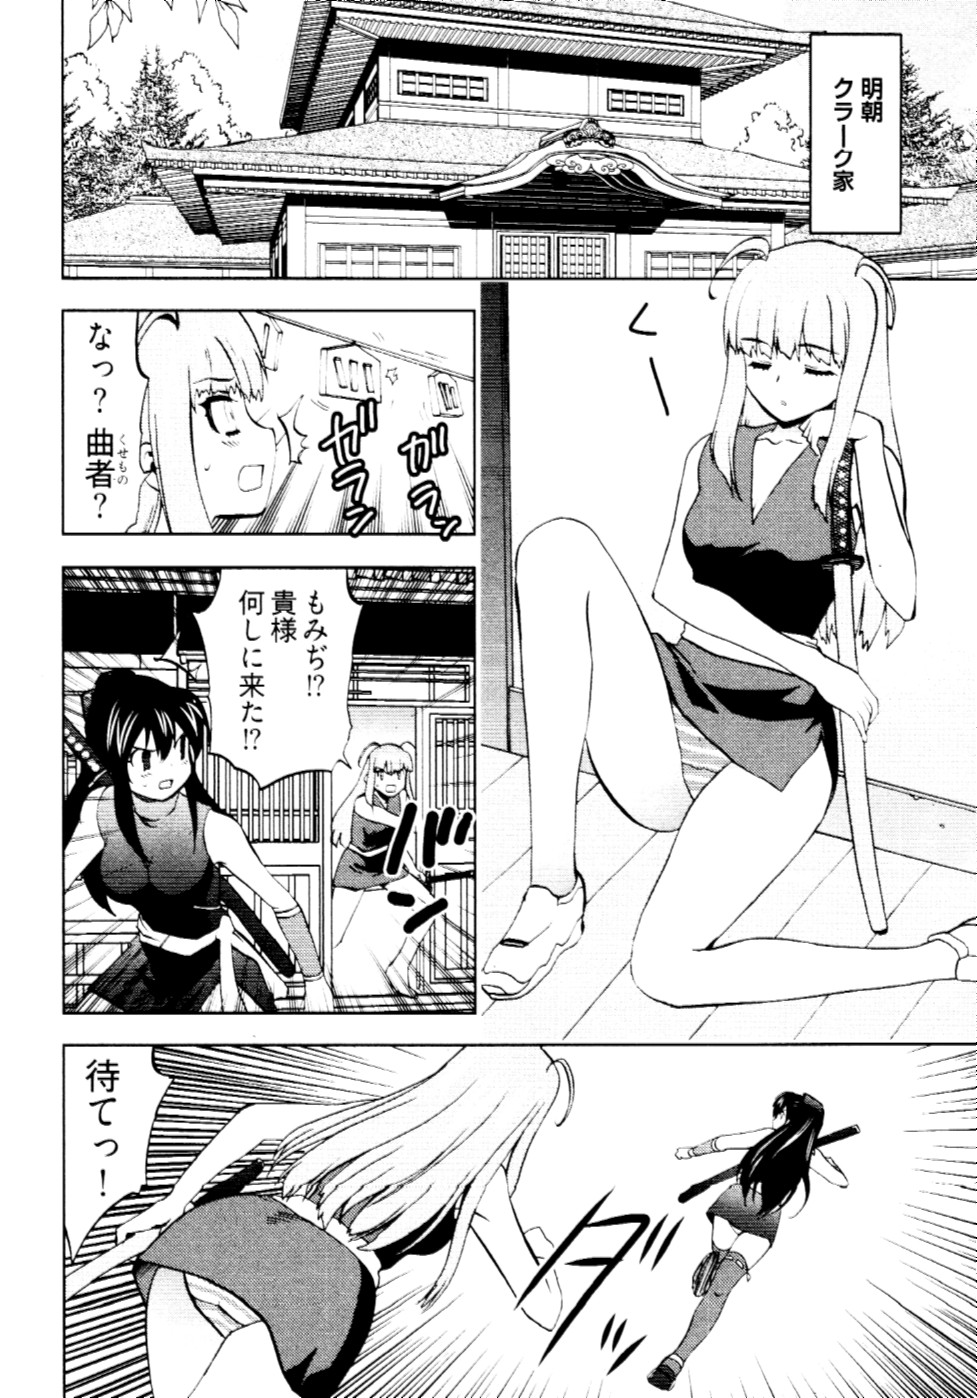 [Togami Shin] Tonosama no Nanahon yari Vol.2 page 15 full